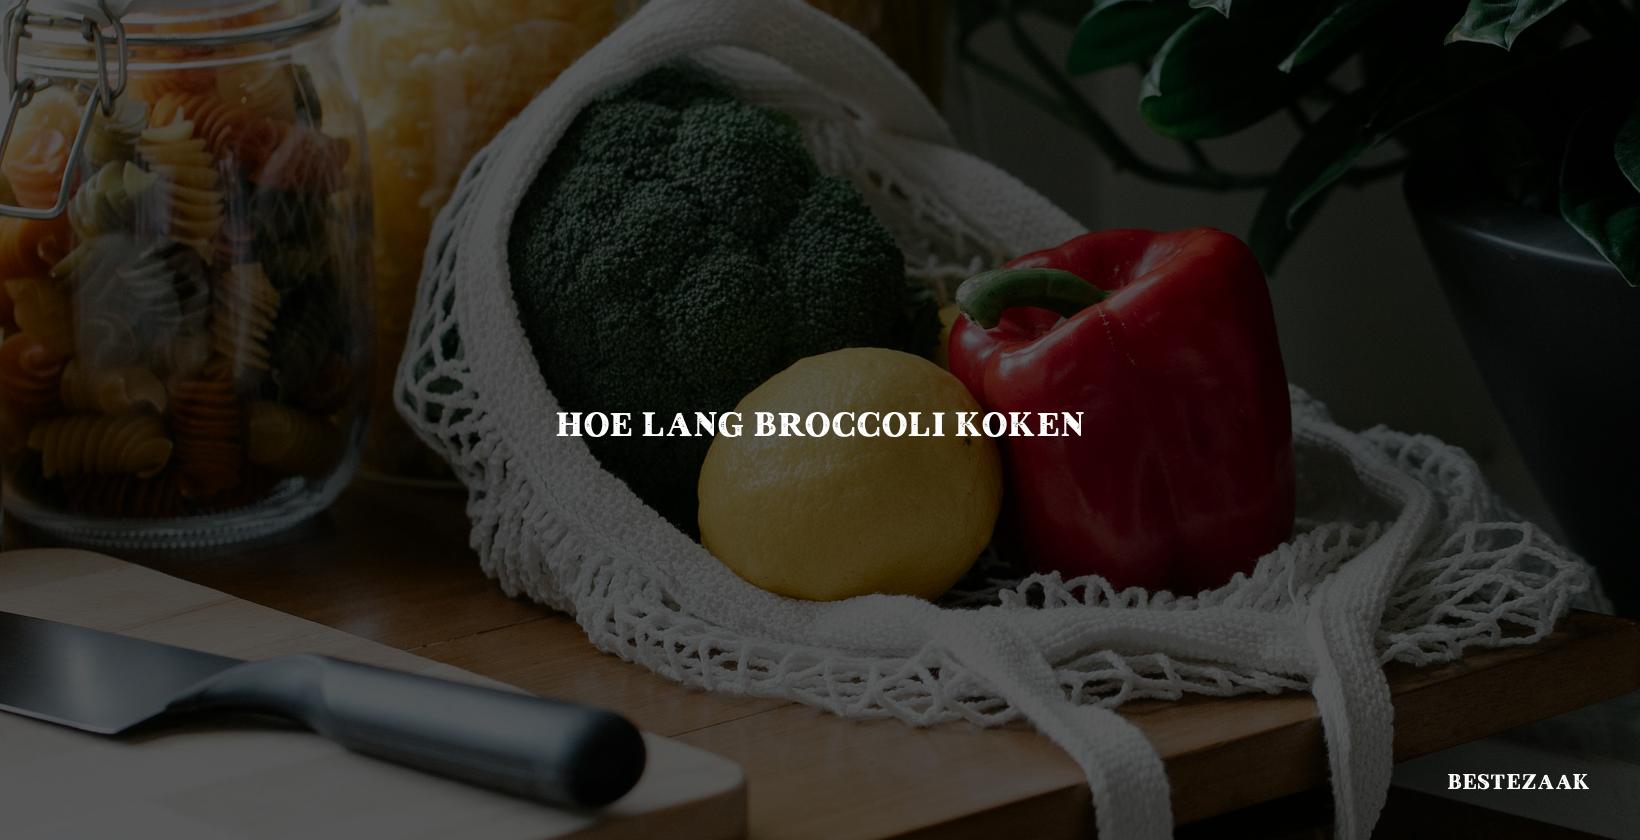 Hoe lang broccoli koken